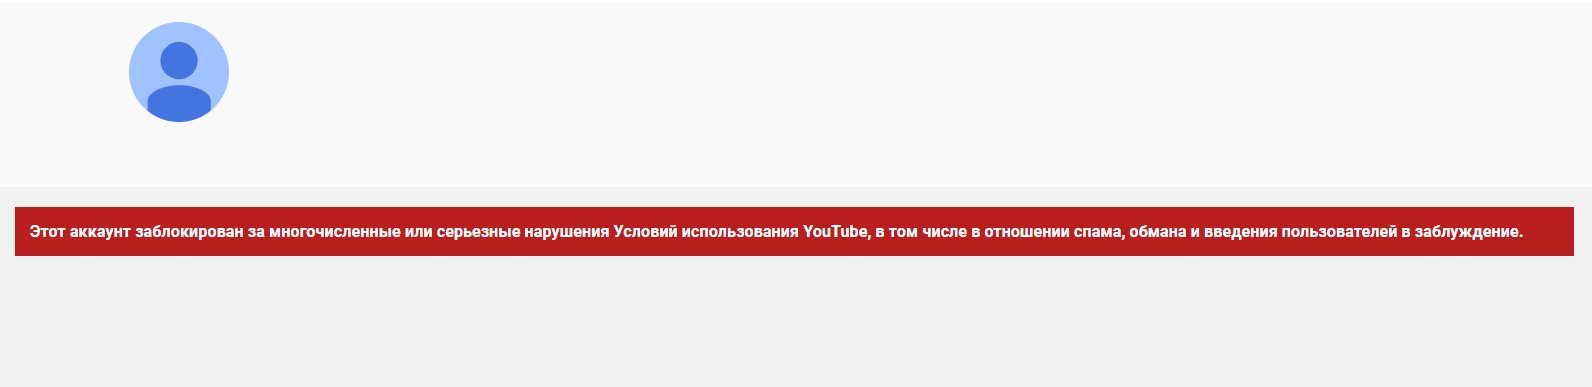 Блокировка YouTube